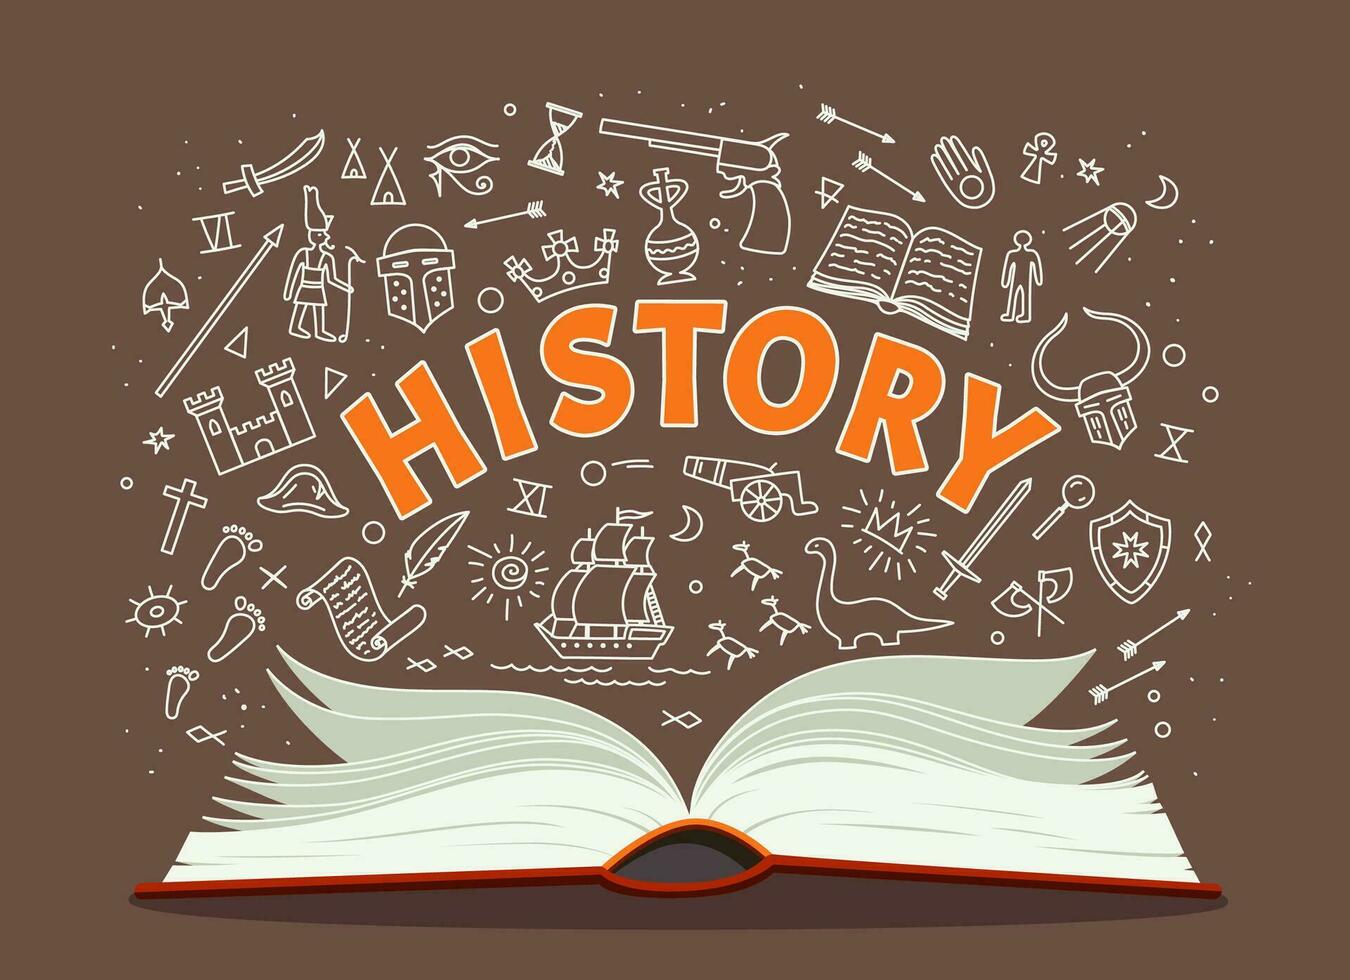 historia lärobok, skola bok och klotter symboler vektor